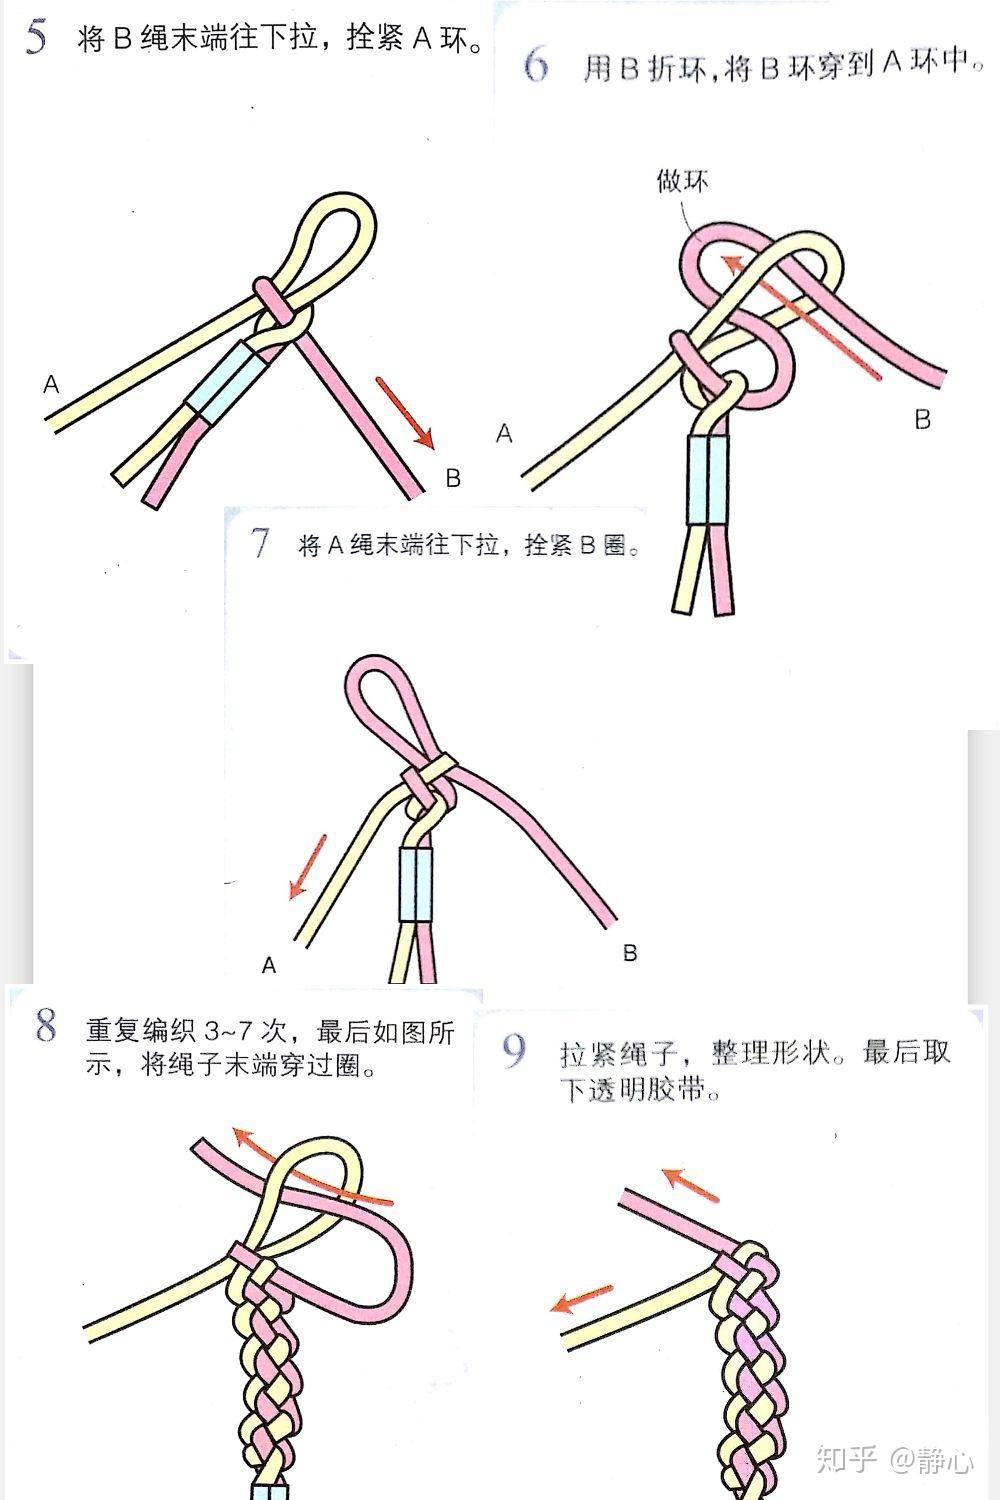 中国传统手工红绳编织之凤尾结锁结